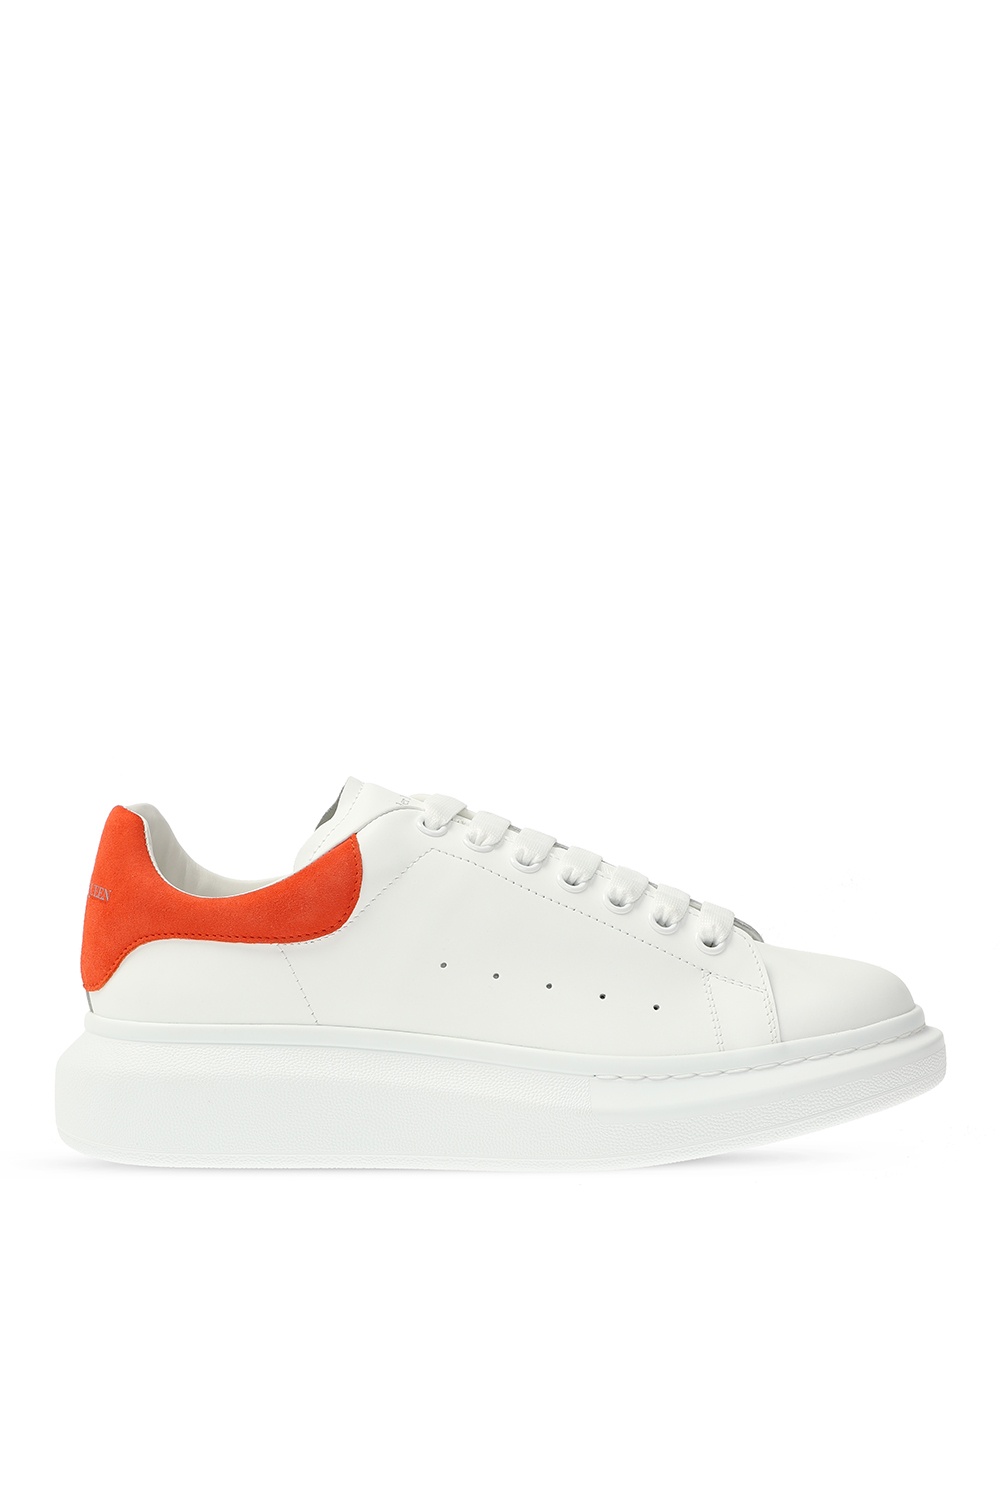 orange alexander mcqueen sneakers